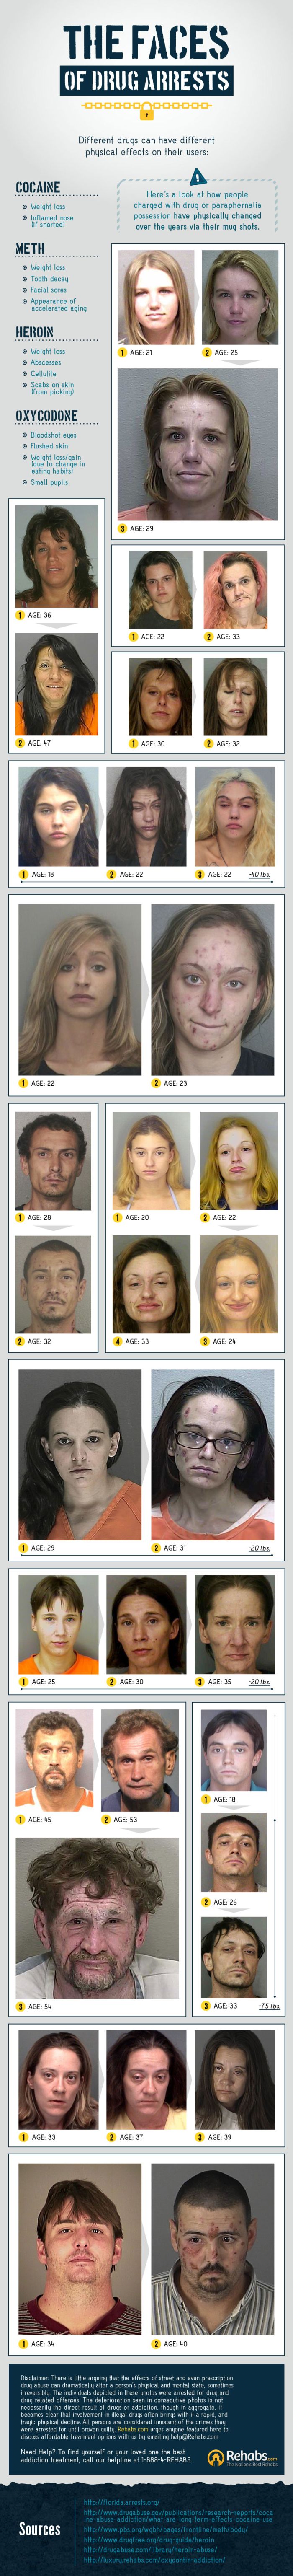 Faces of Drug Arrests (infographic)